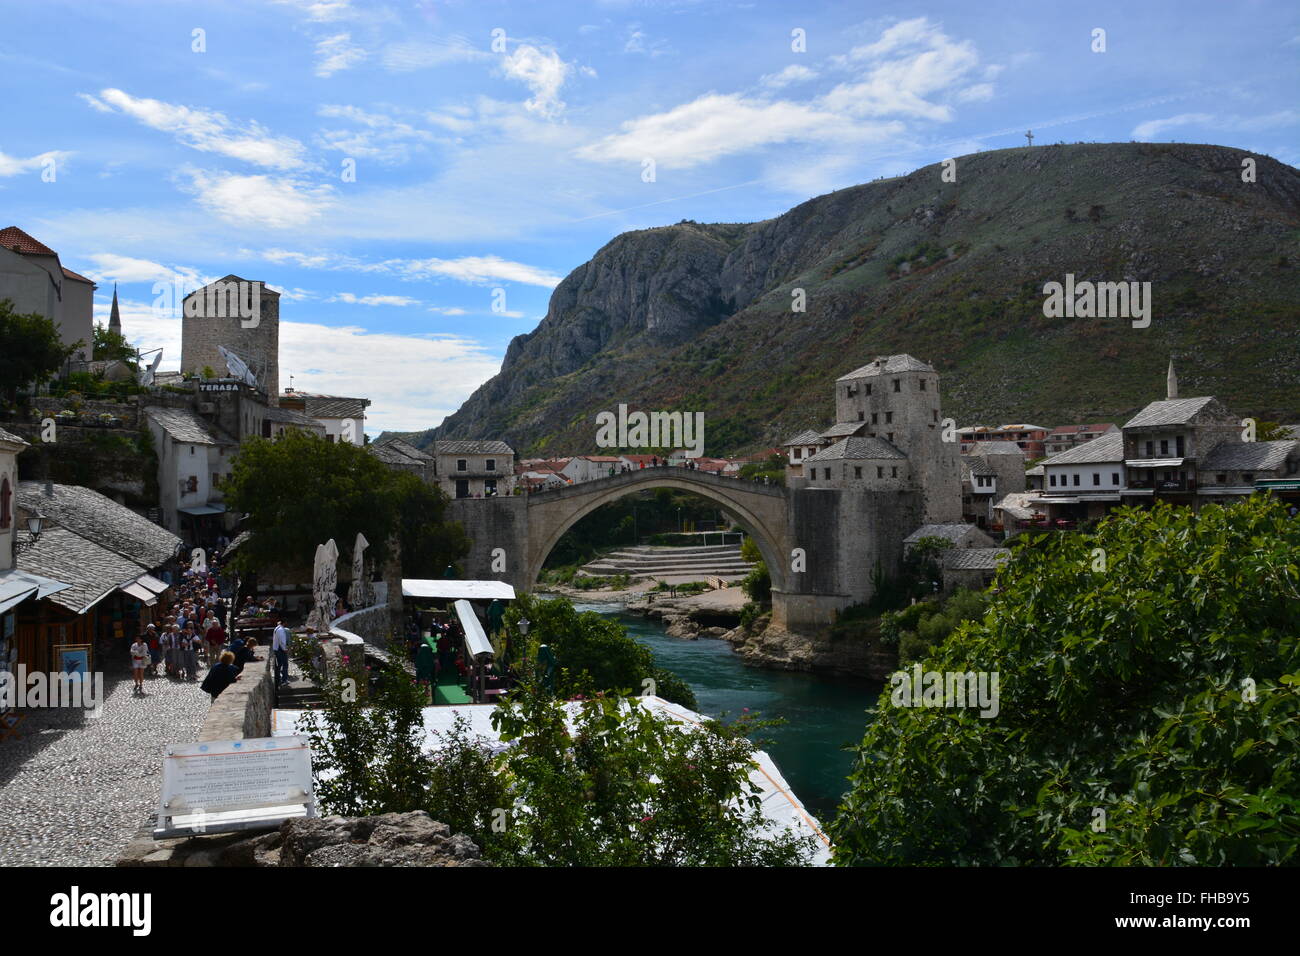 Les marchés touristiques près du 16ème siècle reconstruite pont ottoman Stari Most ou vieux pont de Mostar. Banque D'Images